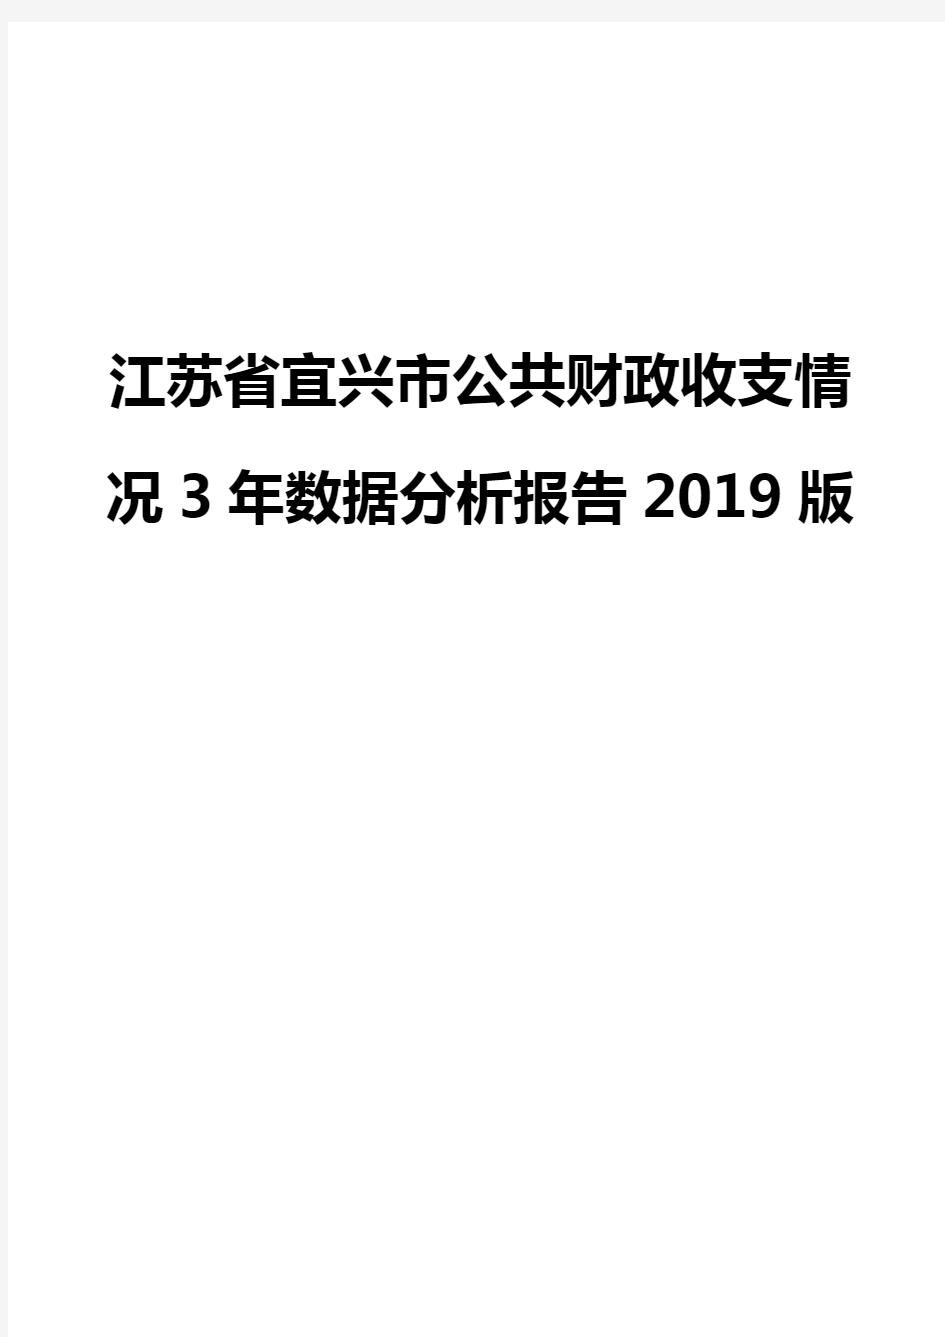 江苏省宜兴市公共财政收支情况3年数据分析报告2019版